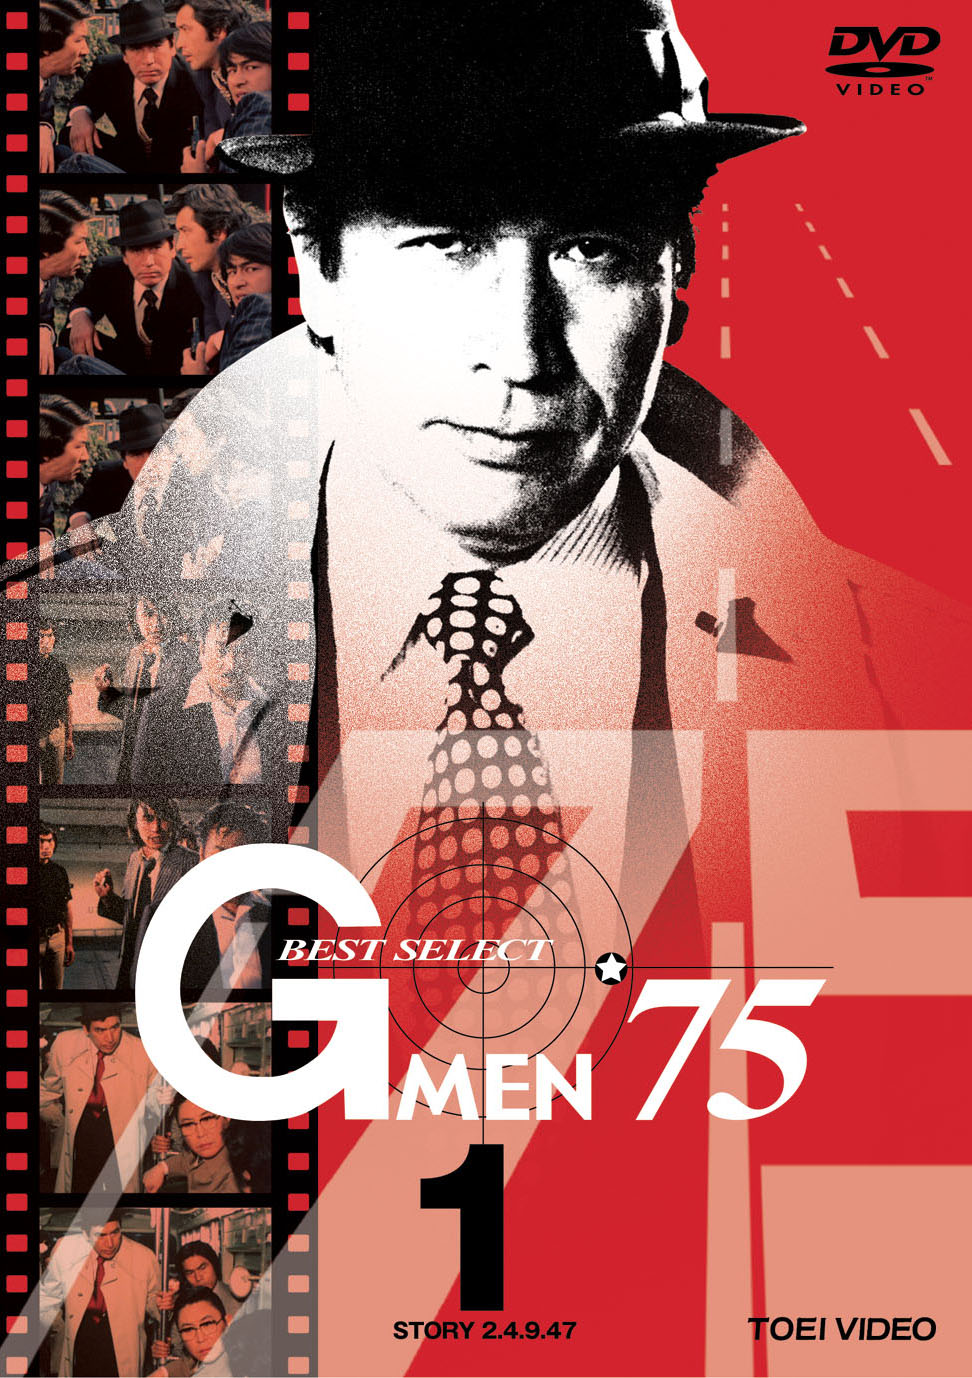 Gメン’75 BEST SELECT Vol.1